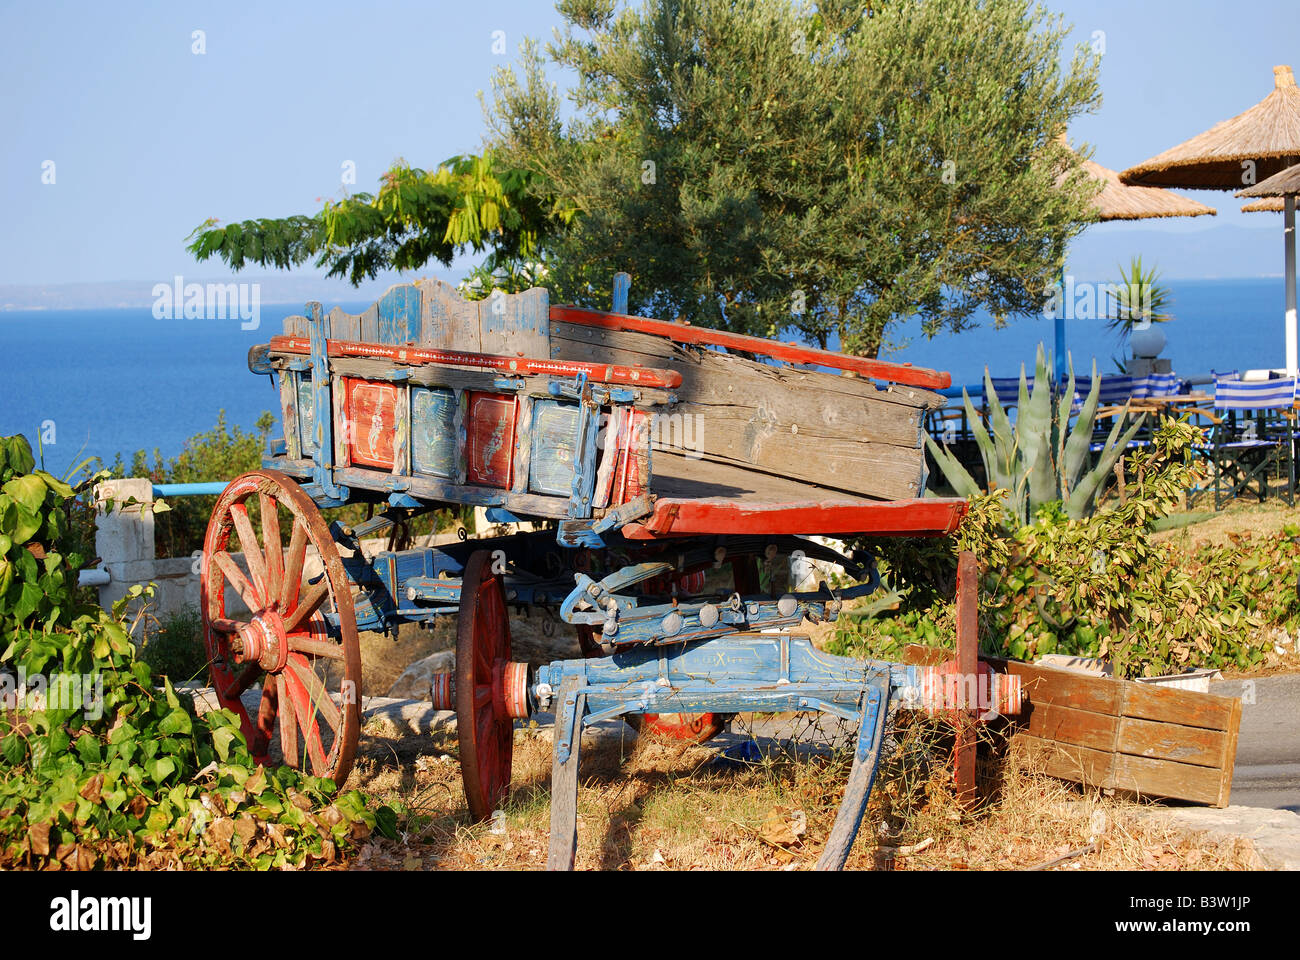 Old wooden wagon by restaurant, Kallithea, Kassandra Peninsula, Chalkidiki, Central Macedonia, Greece Stock Photo